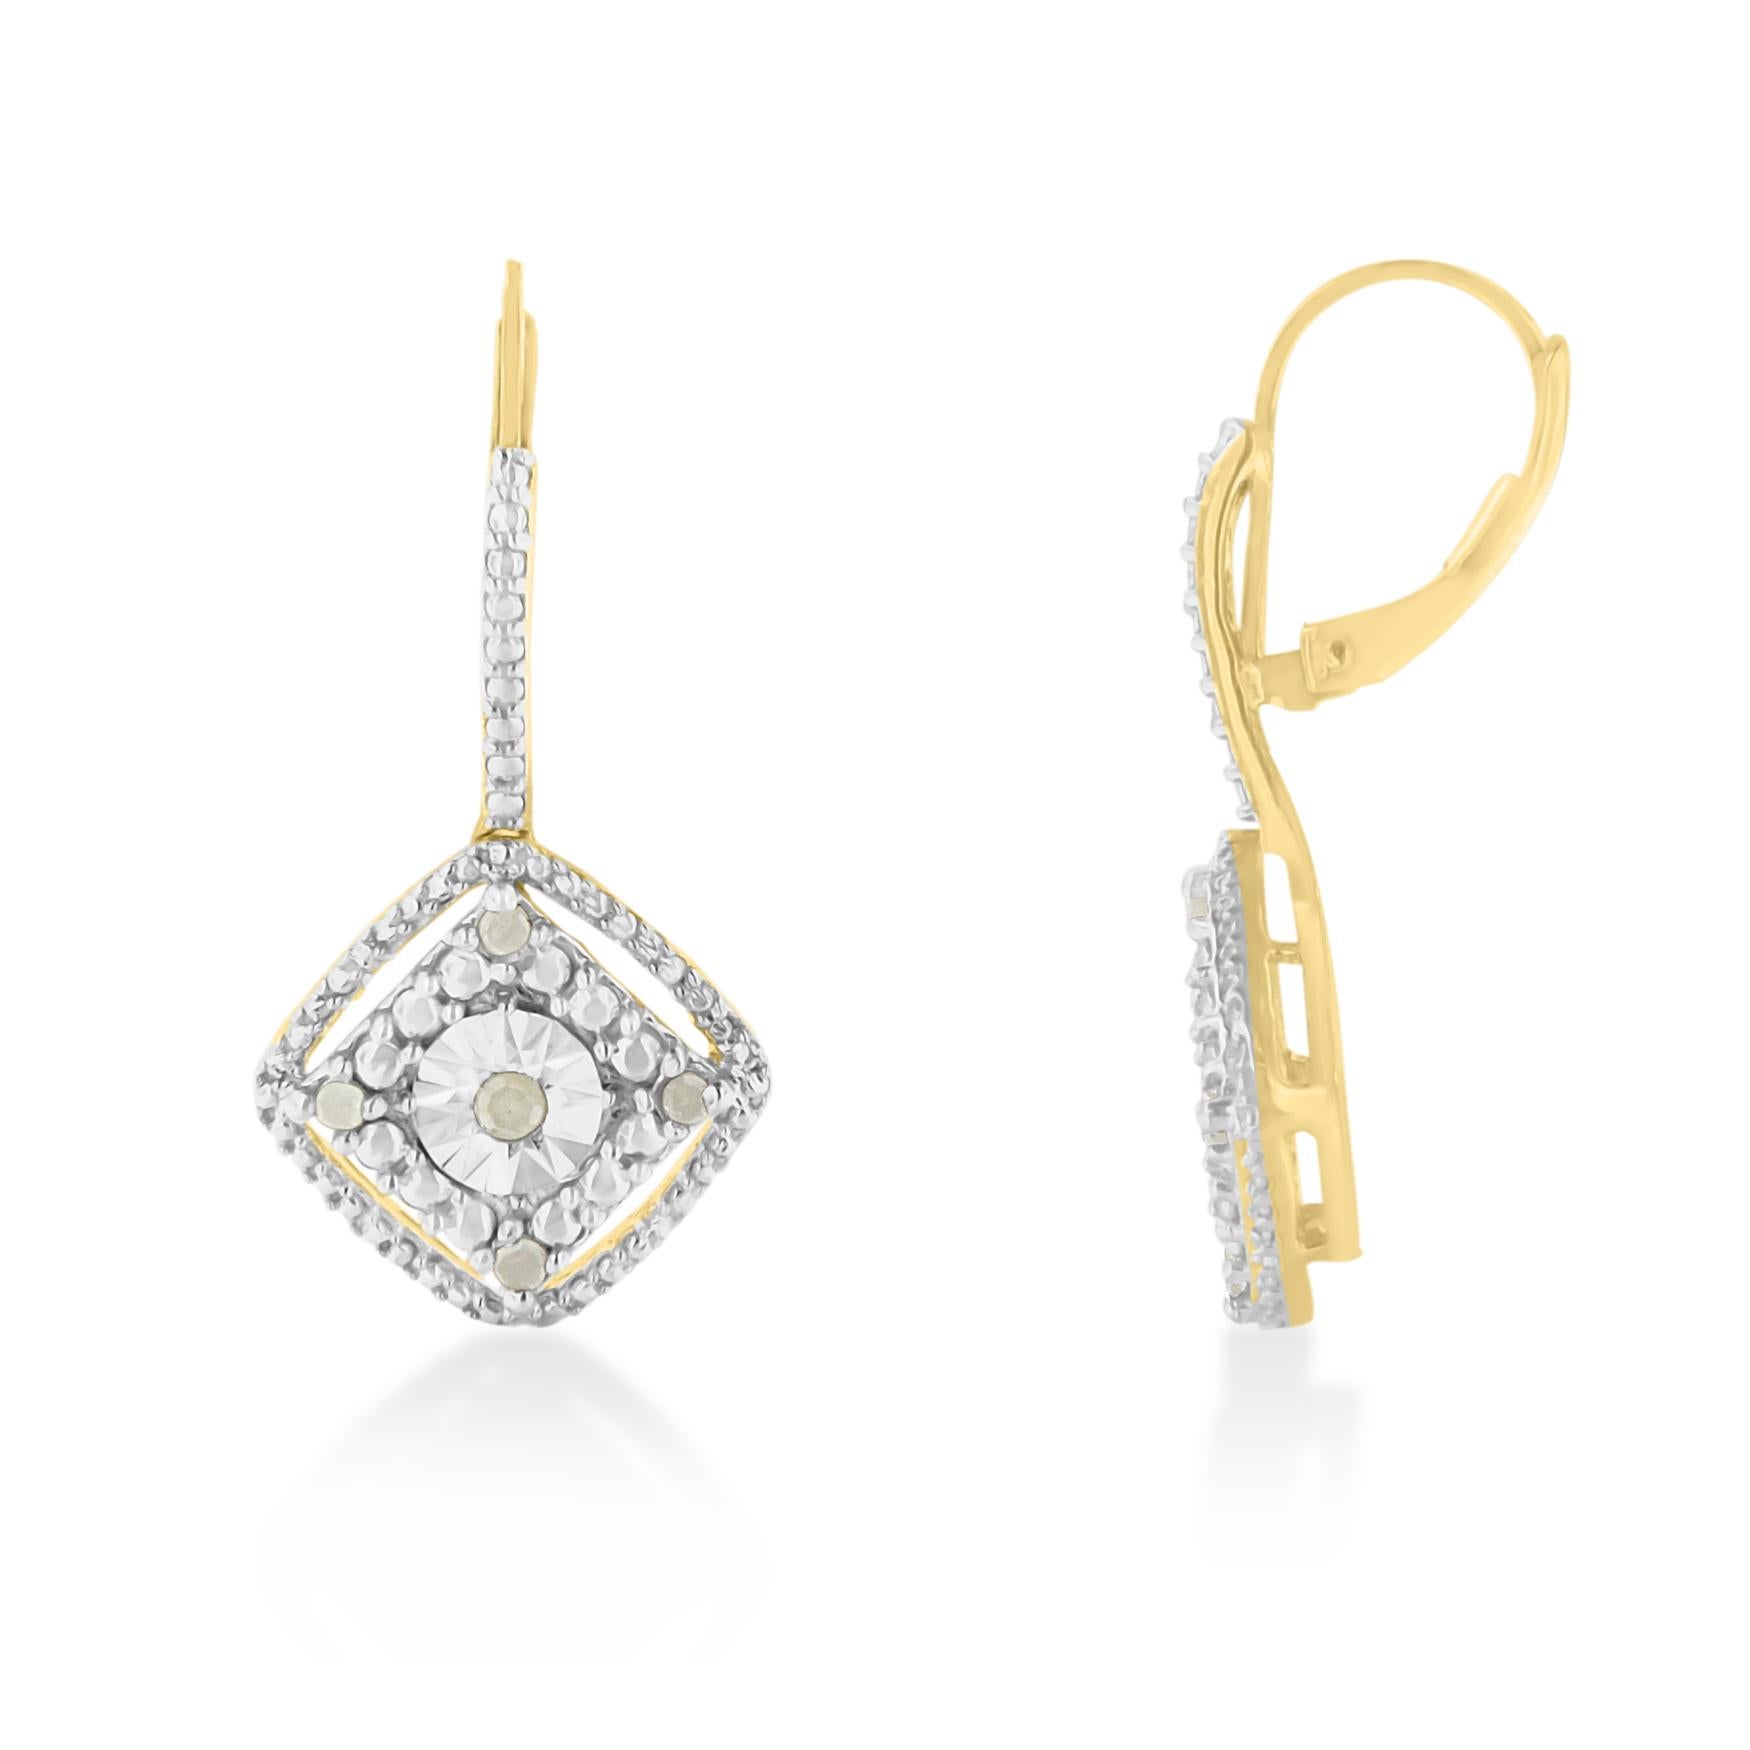 Erhöhen Sie Ihren Stil und verleihen Sie jeder Gelegenheit einen Hauch von Glamour mit diesen exquisiten gelbvergoldeten Sterlingsilber-Diamant-Baumel-Ohrringen. Diese Ohrringe mit einem Viertelkarat sorgfältig ausgewählter Diamanten im Rosenschliff